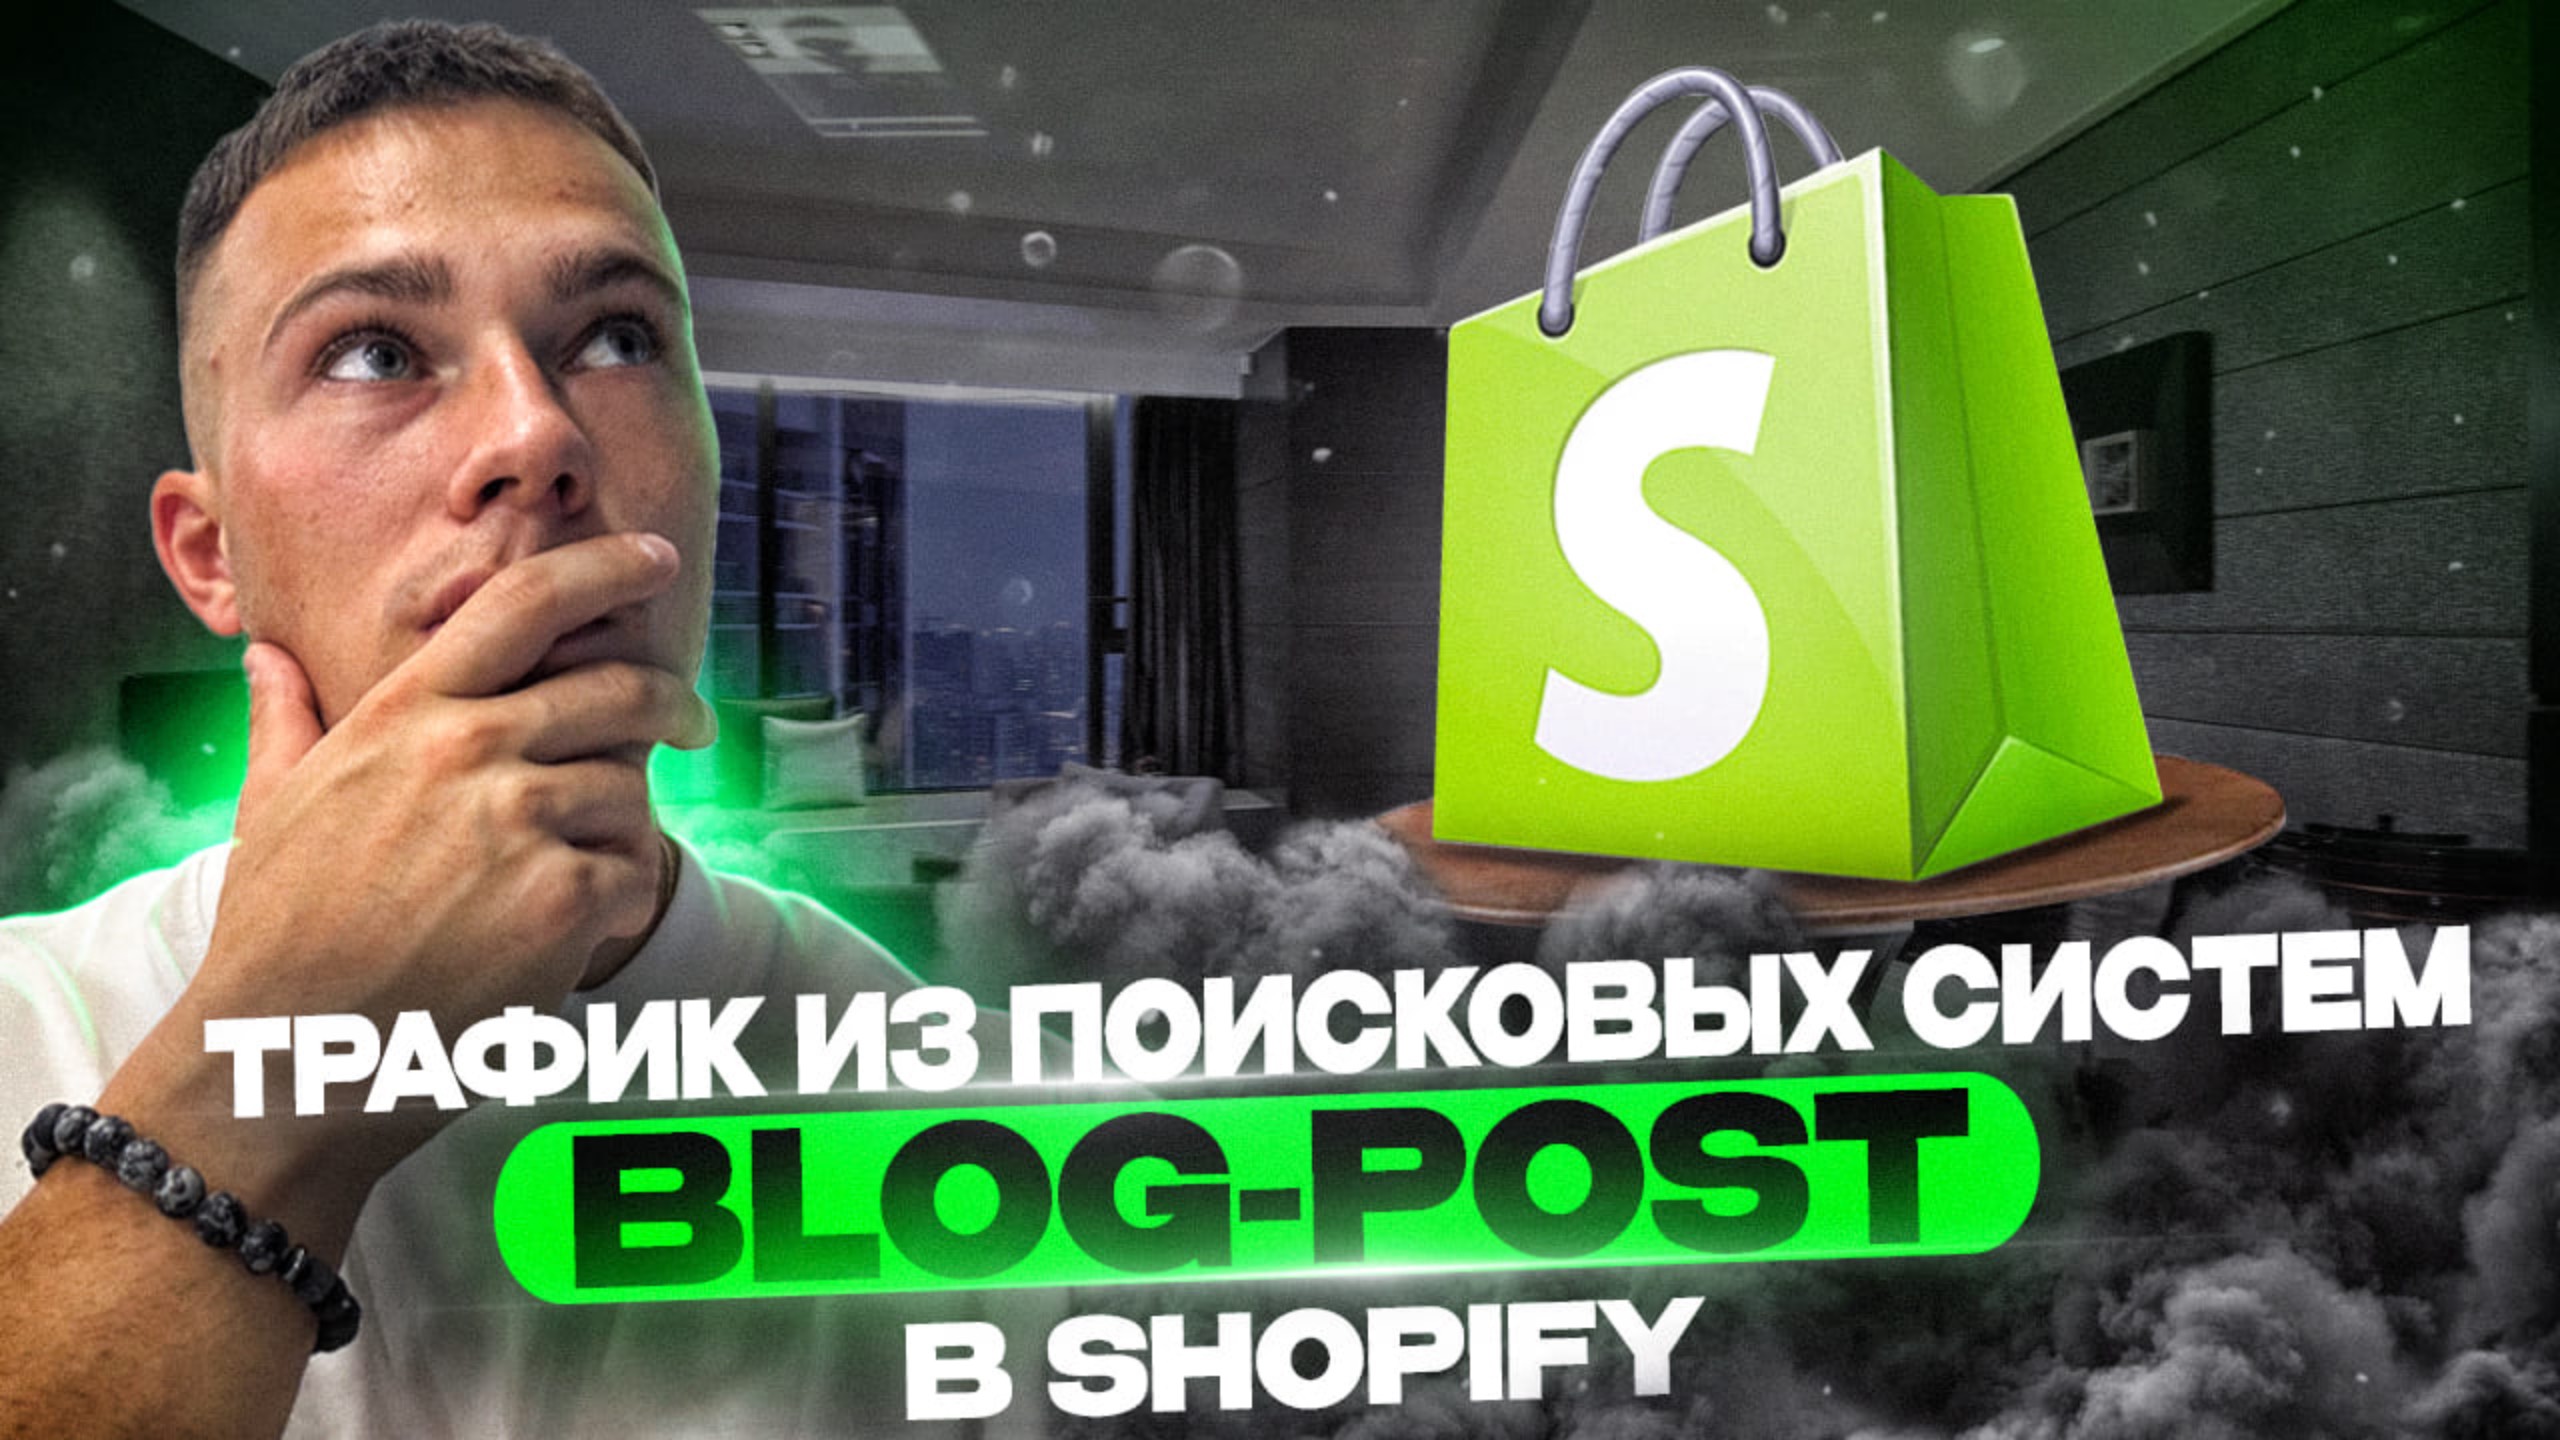 ПРОДВИЖЕНИЕ ЧЕРЕЗ BLOG-POSTS в Shopify. Создание и оформление Блог-постов в интернет-магазине